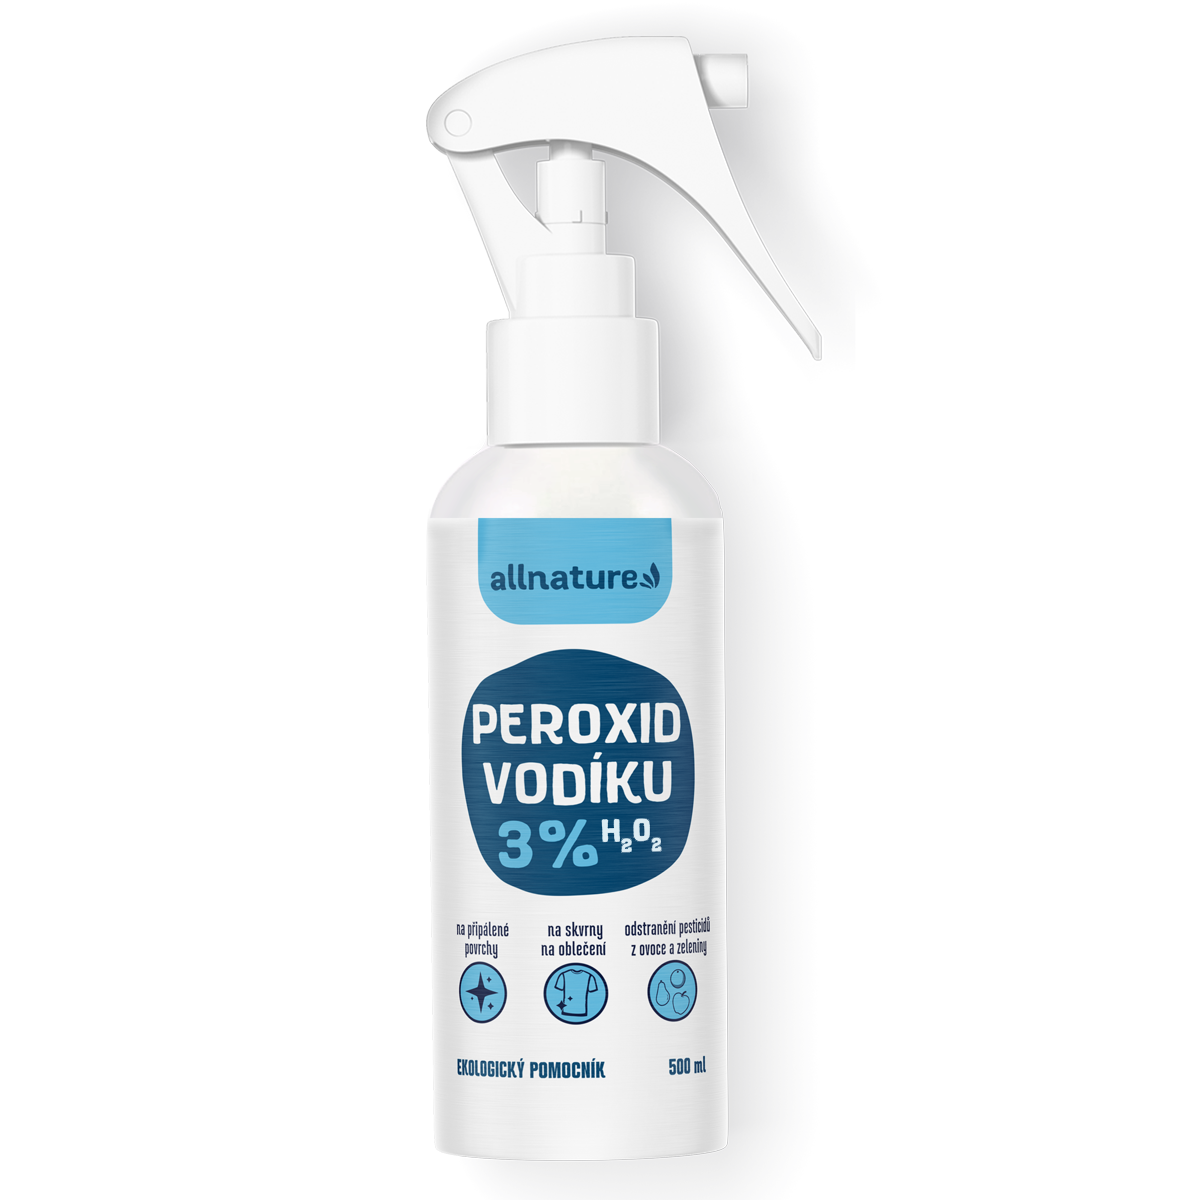 Allnature Peroxid vodíku 3% - 500 ml - univerzální pomocník do domácnosti